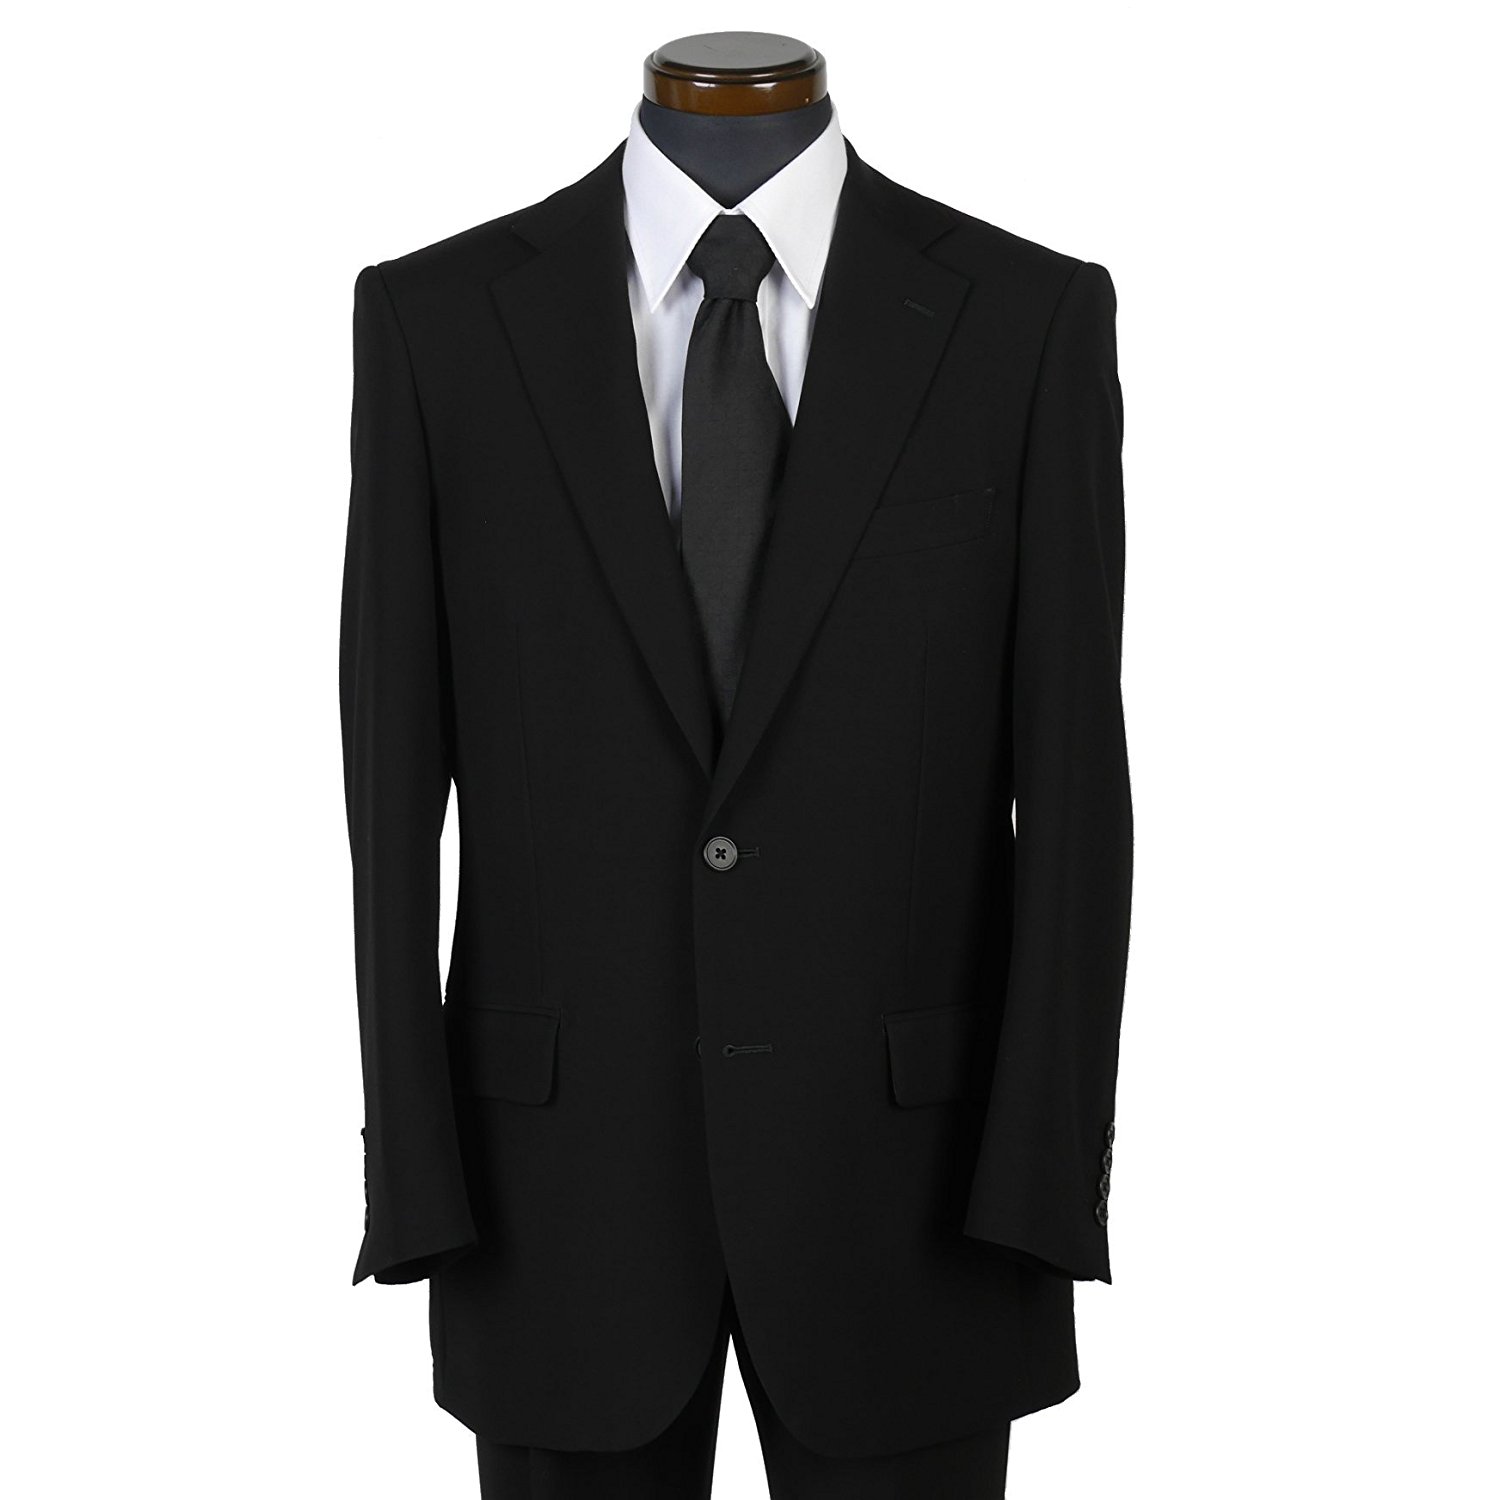 セレモニー 喪服のマナー 紳士服 お葬式での服装について 金時堂情報サイト 生活 仕事についてのまとめサイト